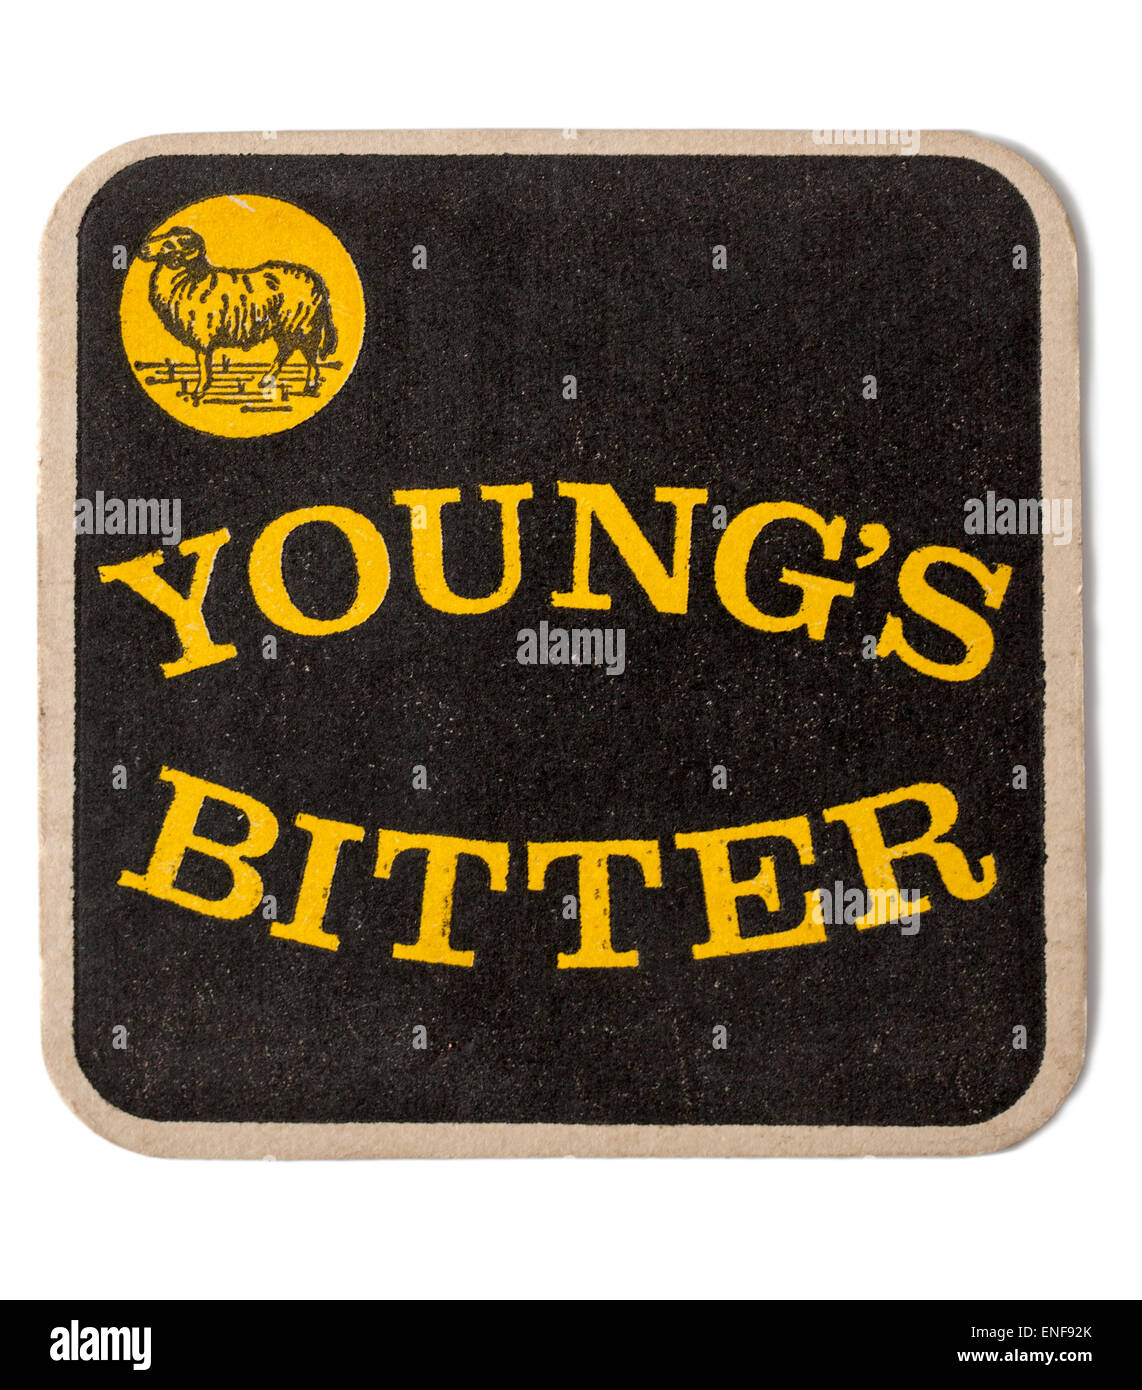 Vintage British vecchia pubblicità Beermat Youngs Brewery e amaro birra Foto Stock